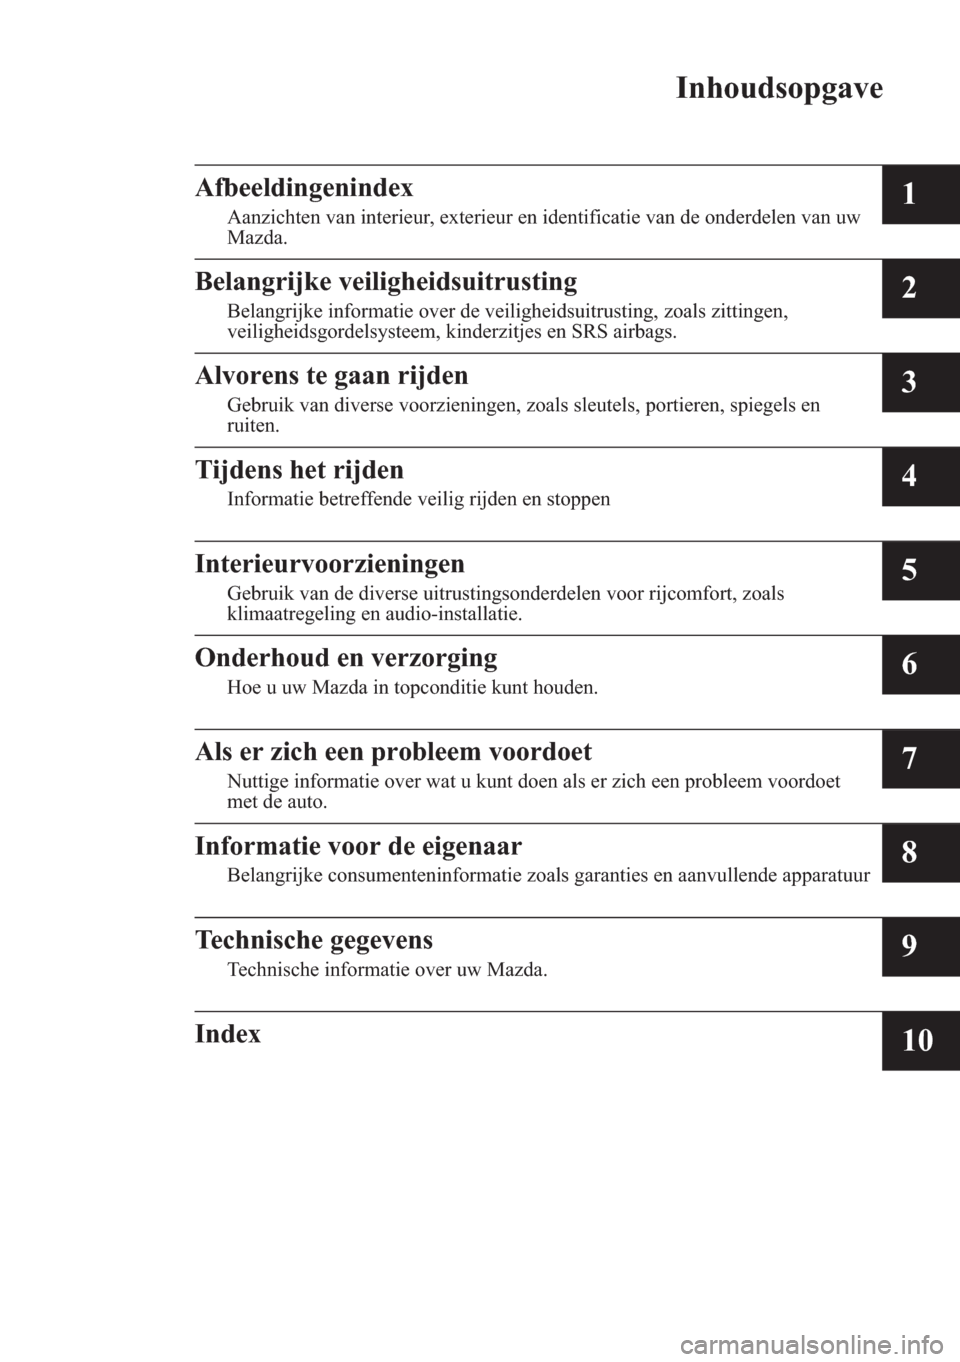 MAZDA MODEL 3 HATCHBACK 2015  Handleiding (in Dutch) Inhoudsopgave
Afbeeldingenindex
Aanzichten van interieur, exterieur en identificatie van de onderdelen van uw
Mazda.1
Belangrijke veiligheidsuitrusting
Belangrijke informatie over de veiligheidsuitrus